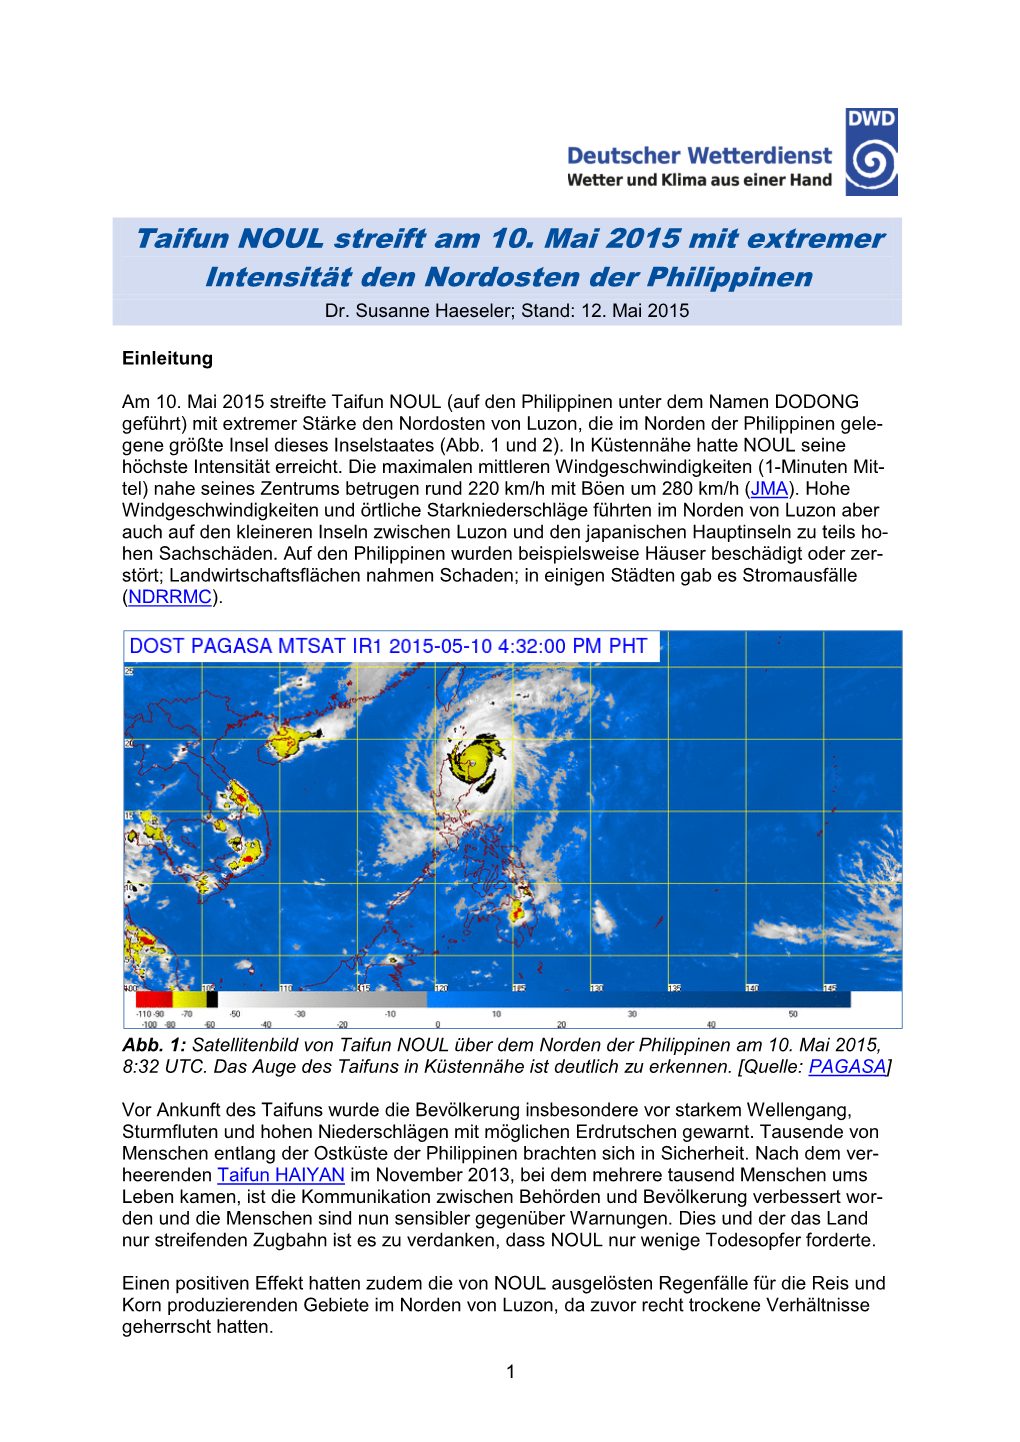 Taifun NOUL Streift Am 10. Mai 2015 Mit Extremer Intensität Den Nordosten Der Philippinen Dr